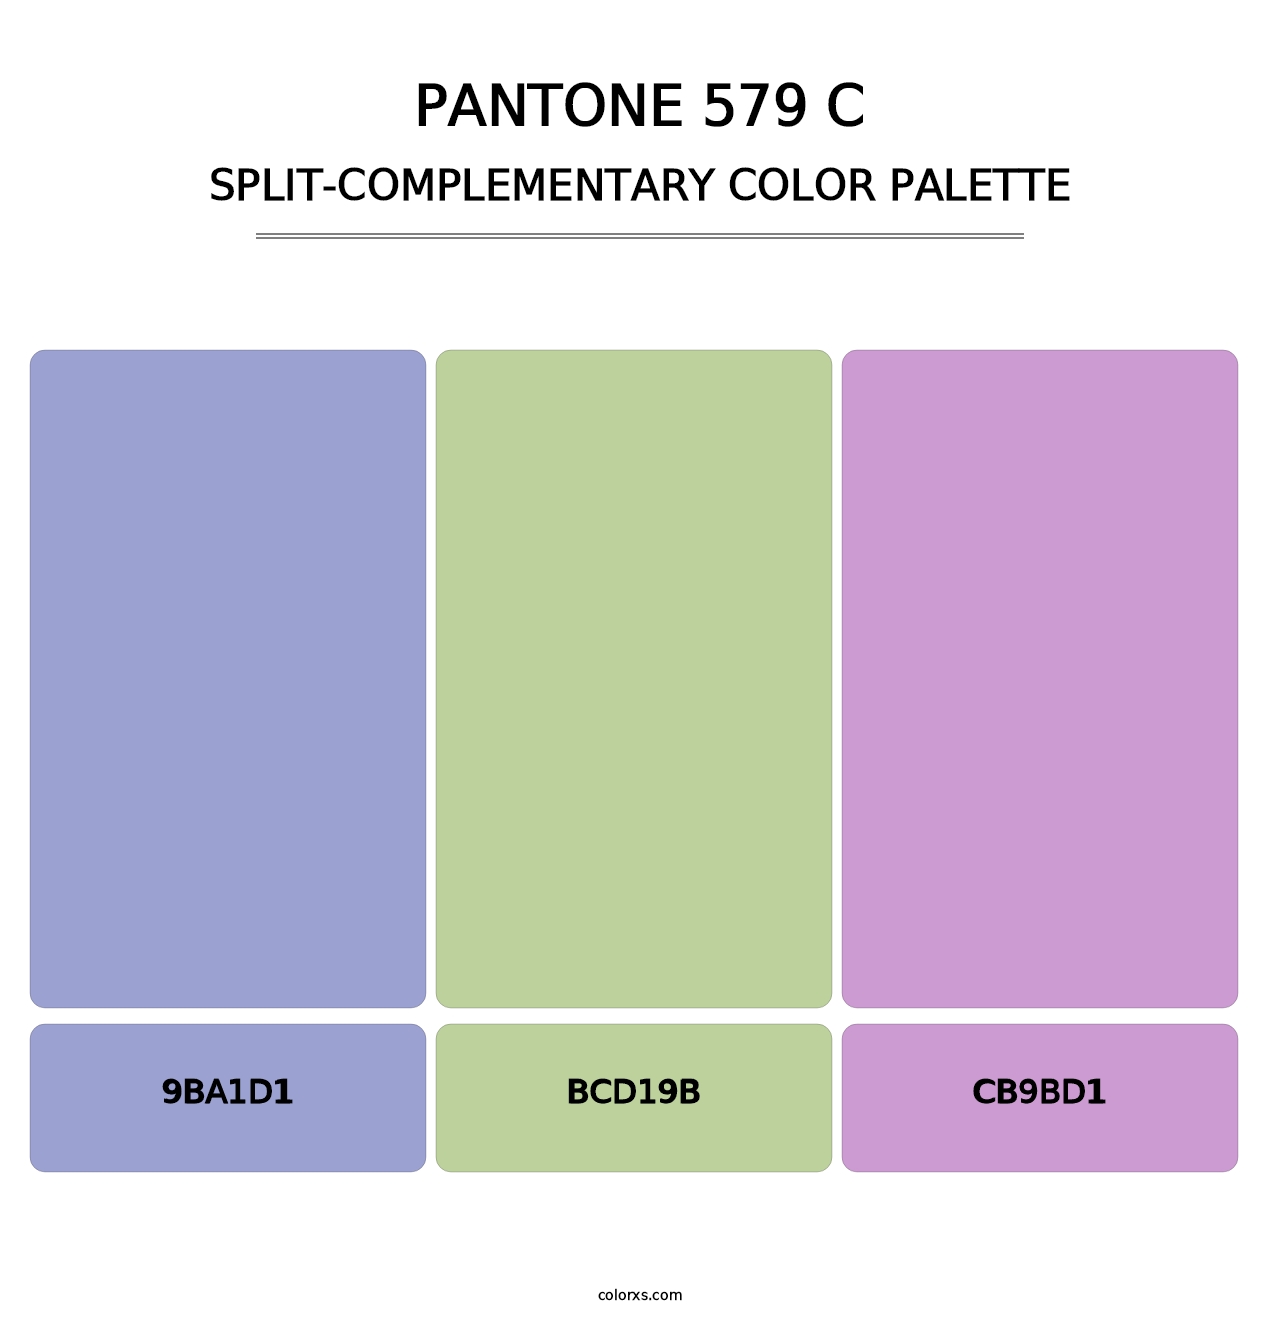 PANTONE 579 C - Split-Complementary Color Palette